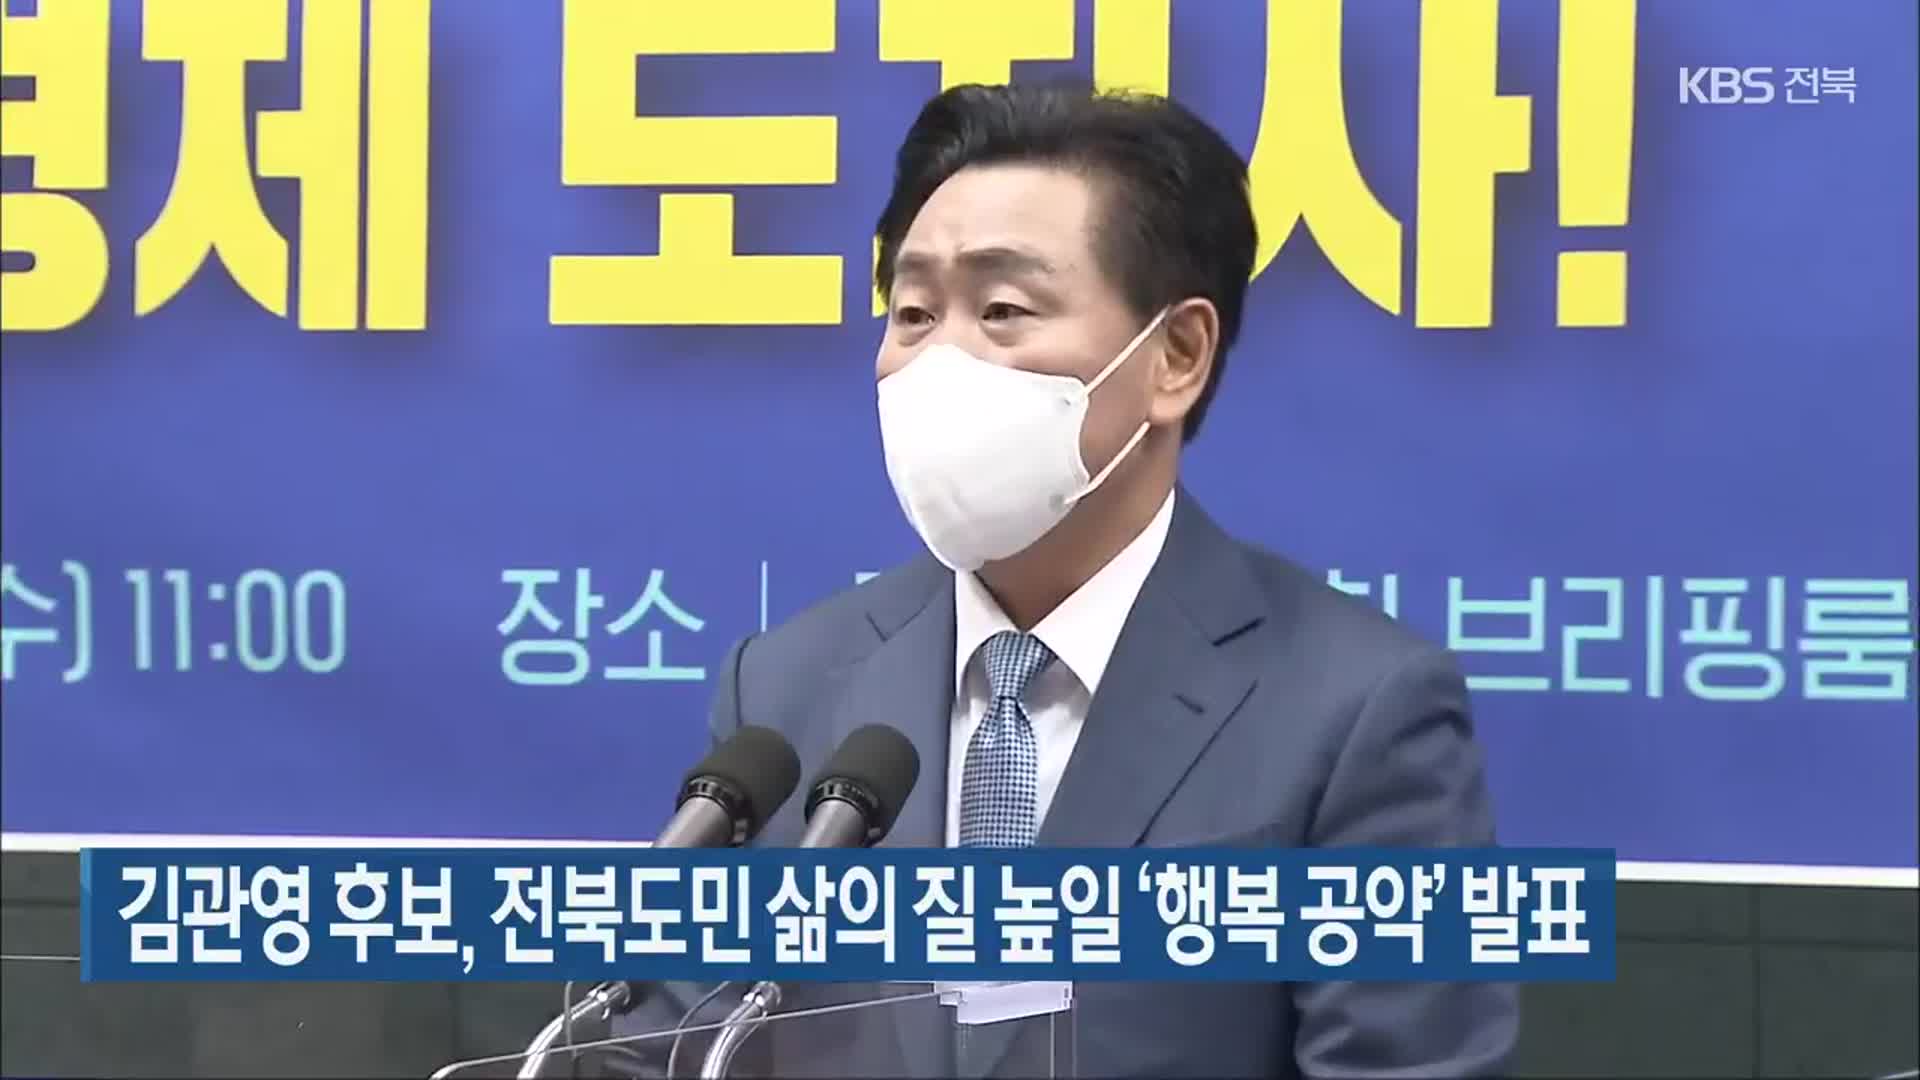 김관영 후보, 전북도민 삶의 질 높일 ‘행복 공약’ 발표